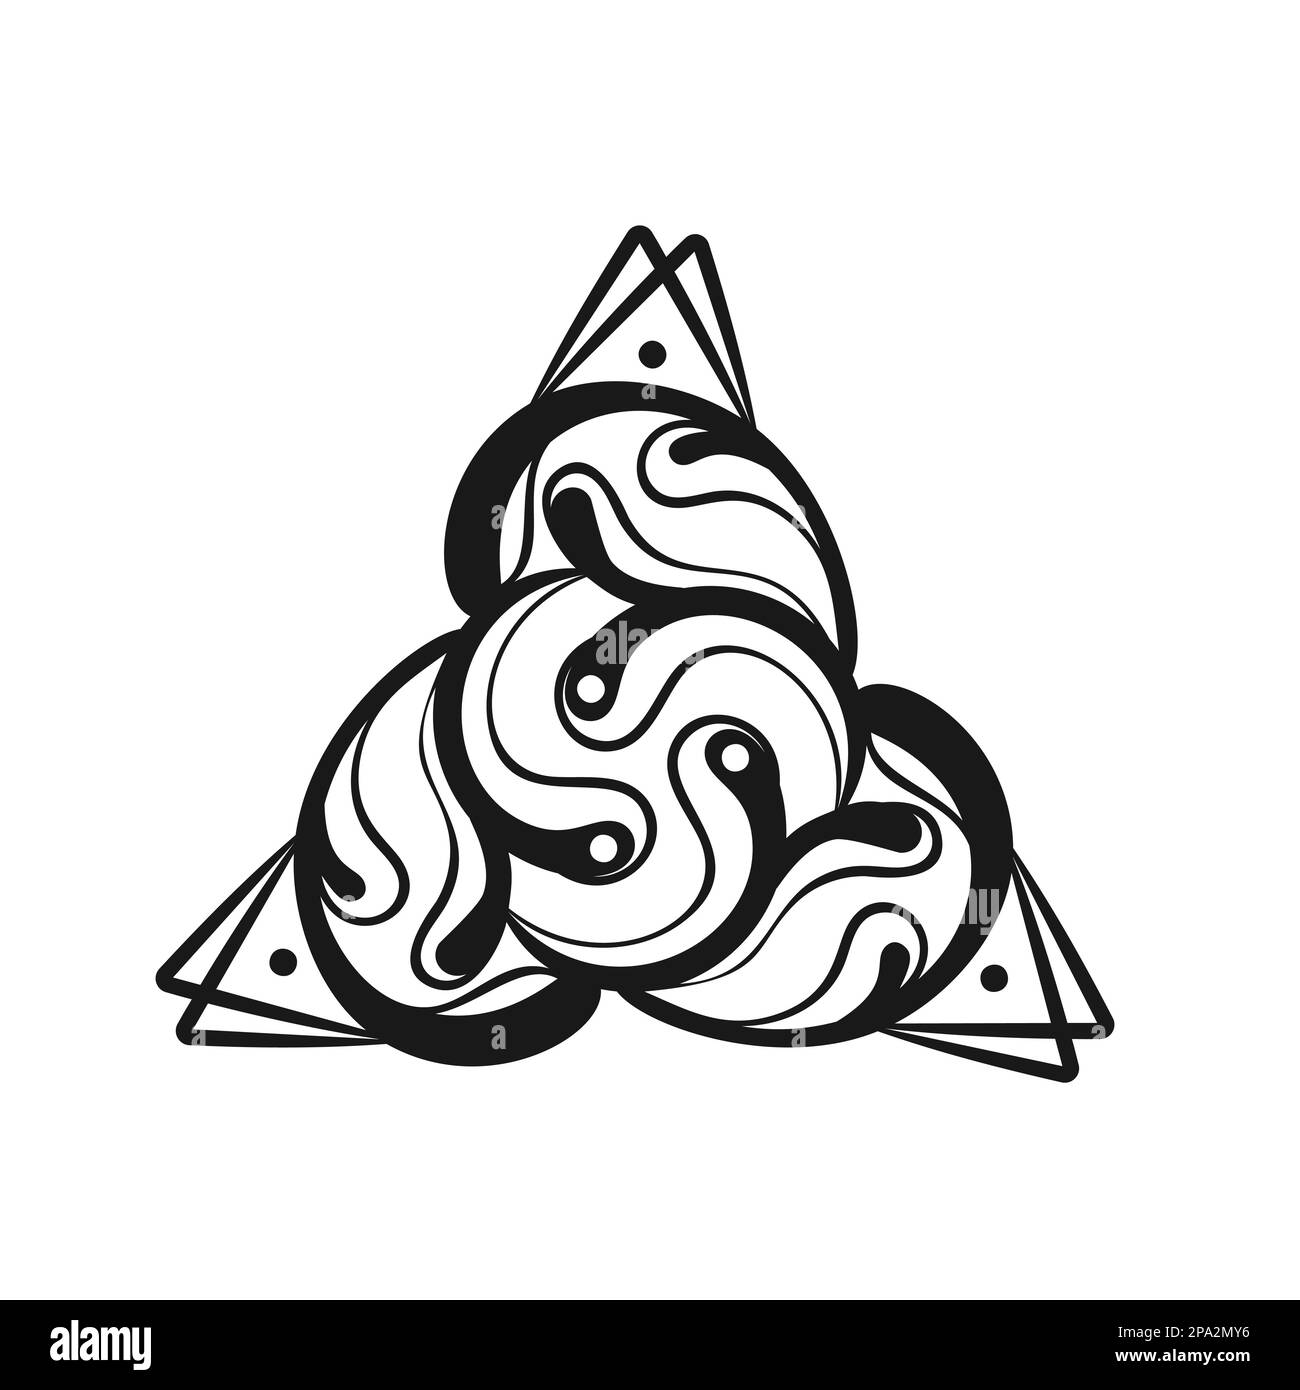 Keltisches Triquetramuster mit Dreieck, Motiv verdrehter und verbundener Linien in Rotationssymmetrie, isolierter Darstellungsvektor Stock Vektor